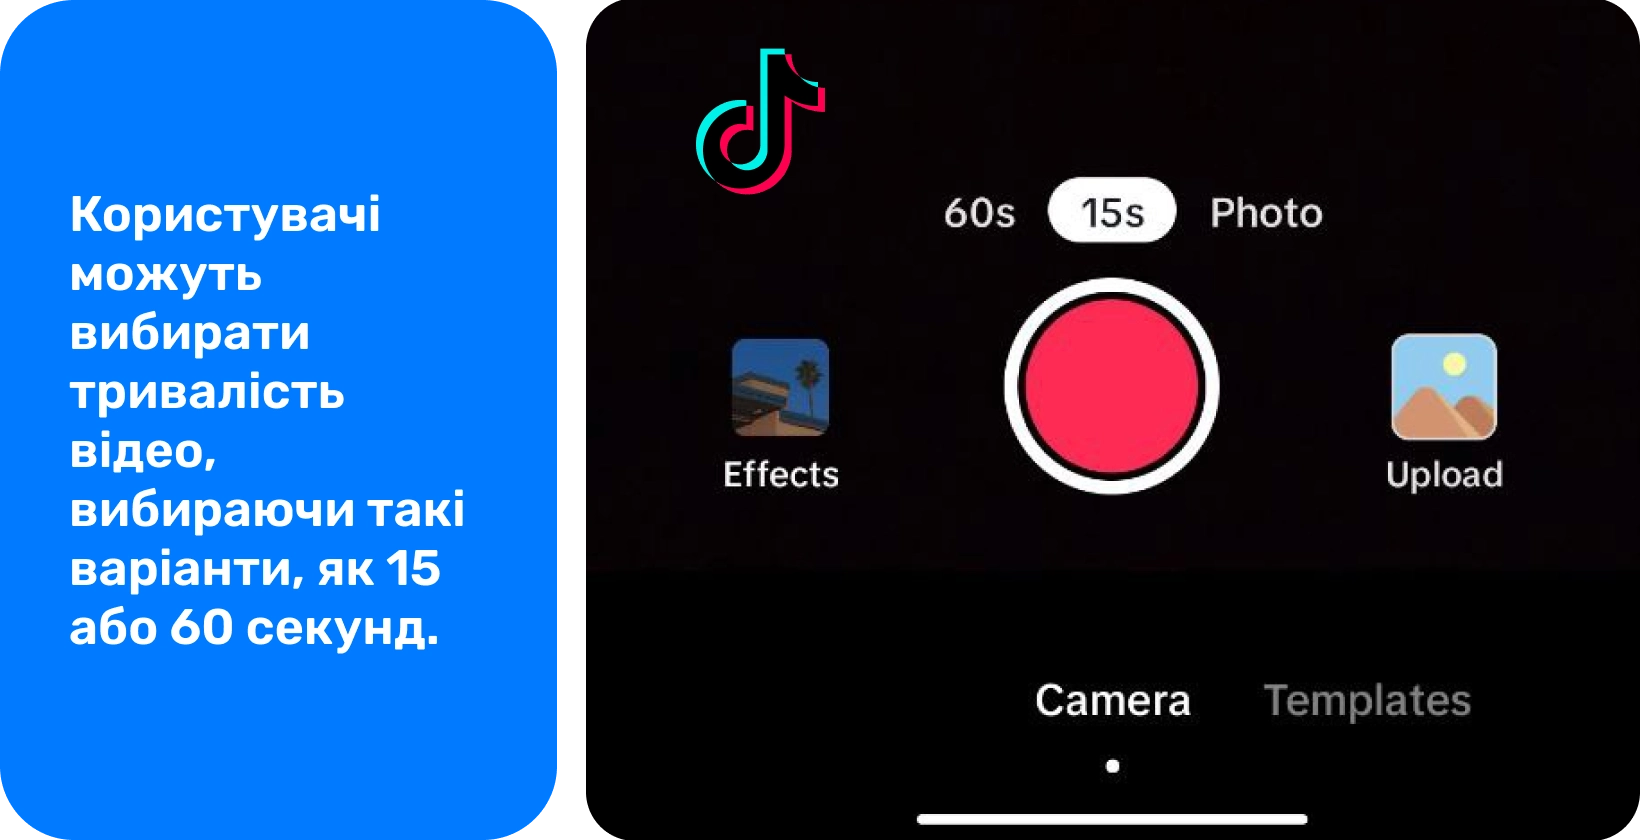 Інтерфейс запису TikTok з опціями додавання звуку, перевертання камери, застосування фільтрів, використання таймера та багато іншого для створення творчих відео.
